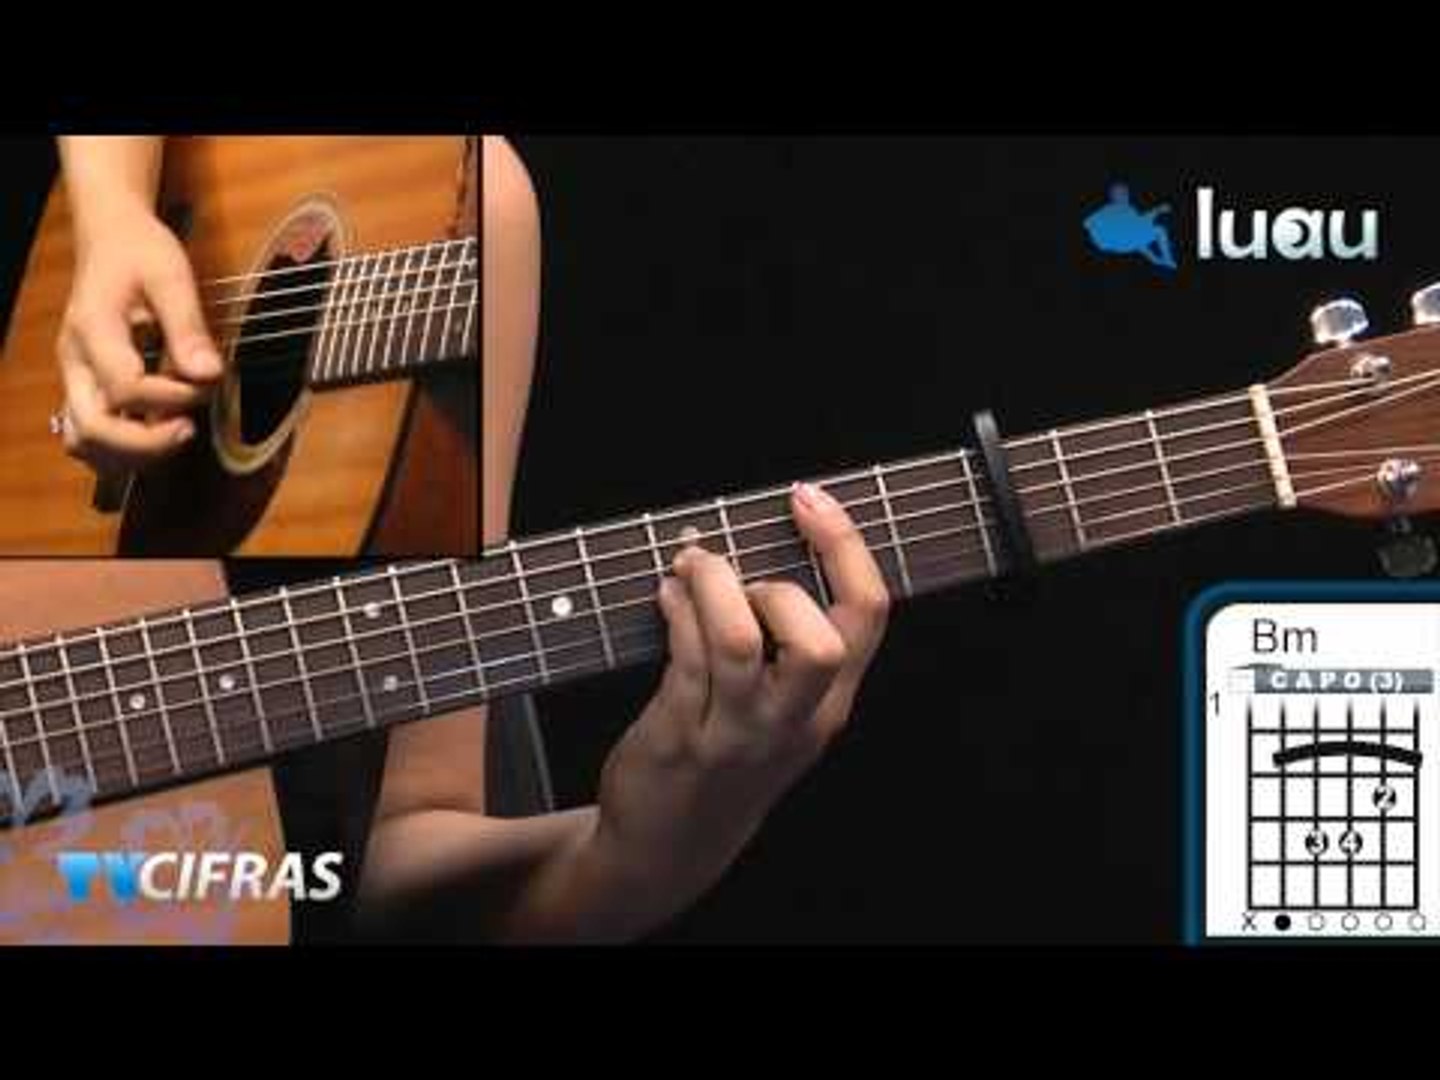 Aprenda 14 cifras simplificadas de Caetano Veloso no violão